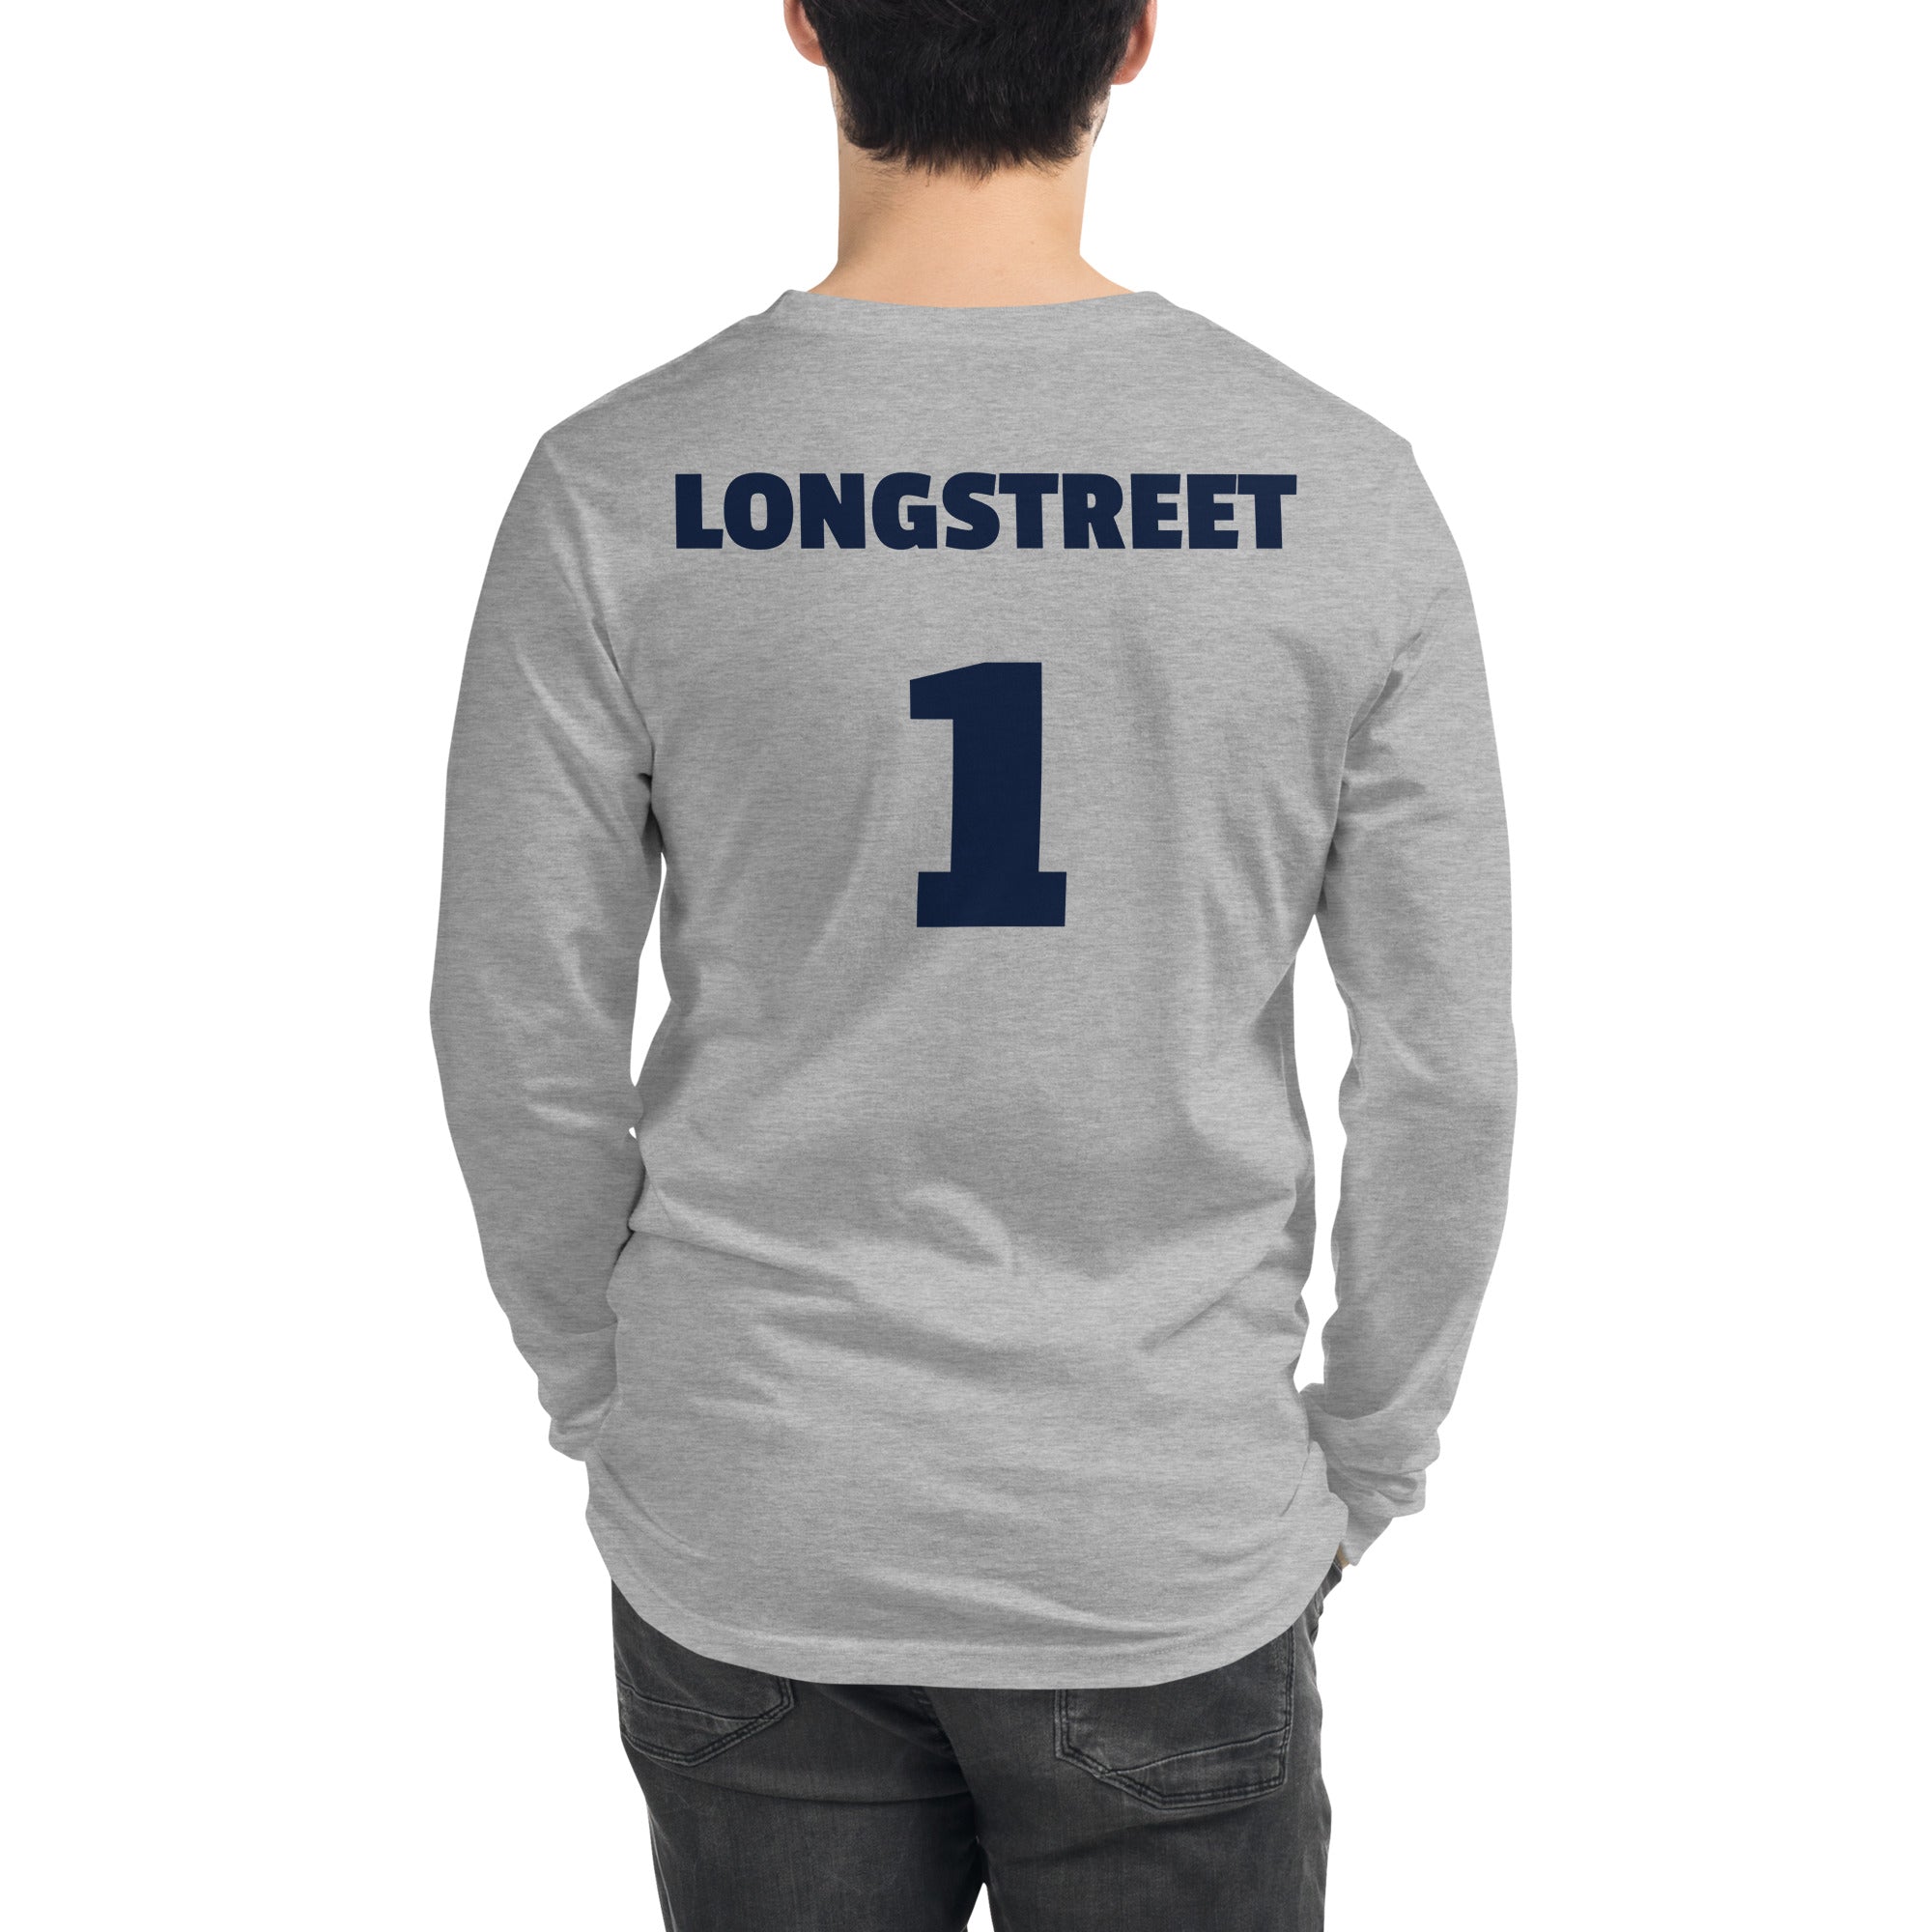 Longstreet #1 - The Battle of Gettysburg Podcast T-Shirt